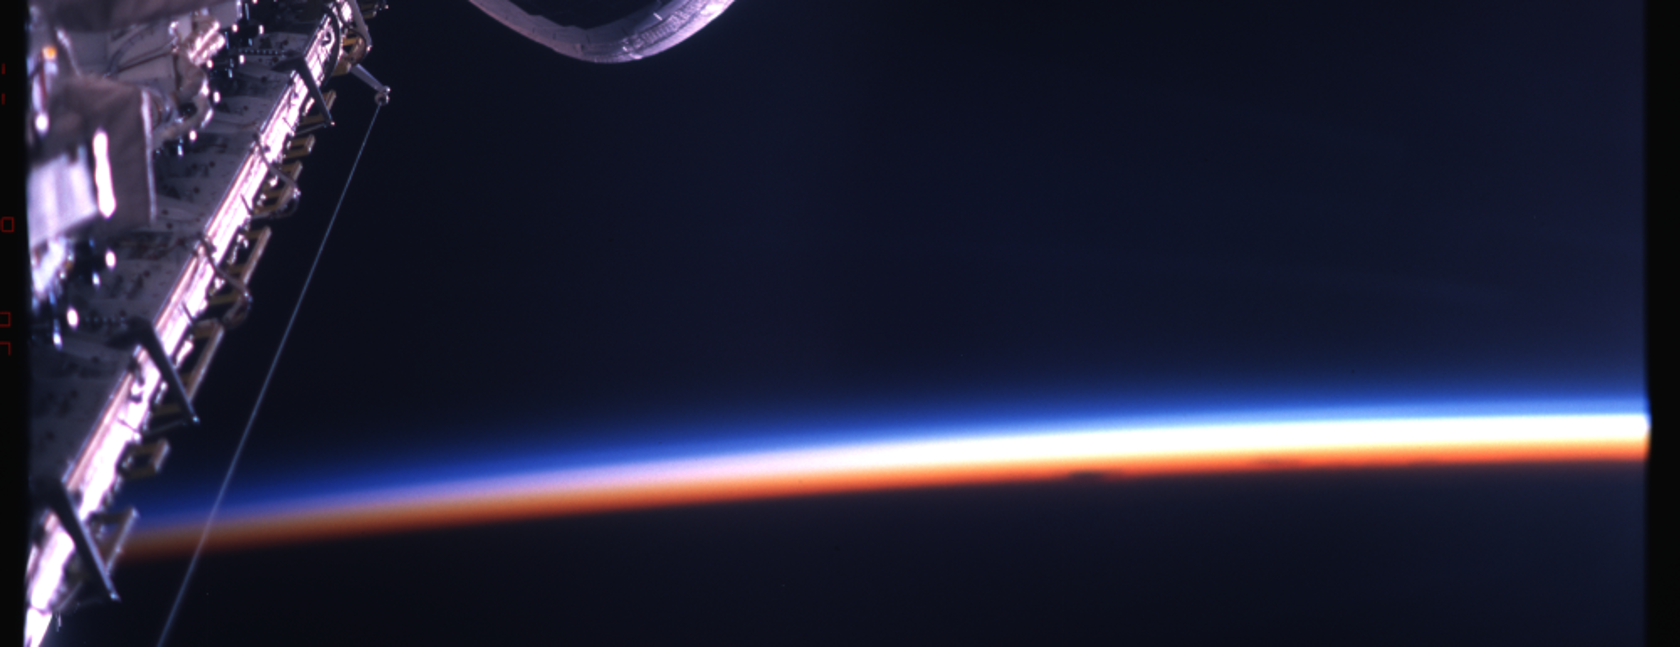 La terra vista dallo spazio con l’astronauta Maurizio Cheli